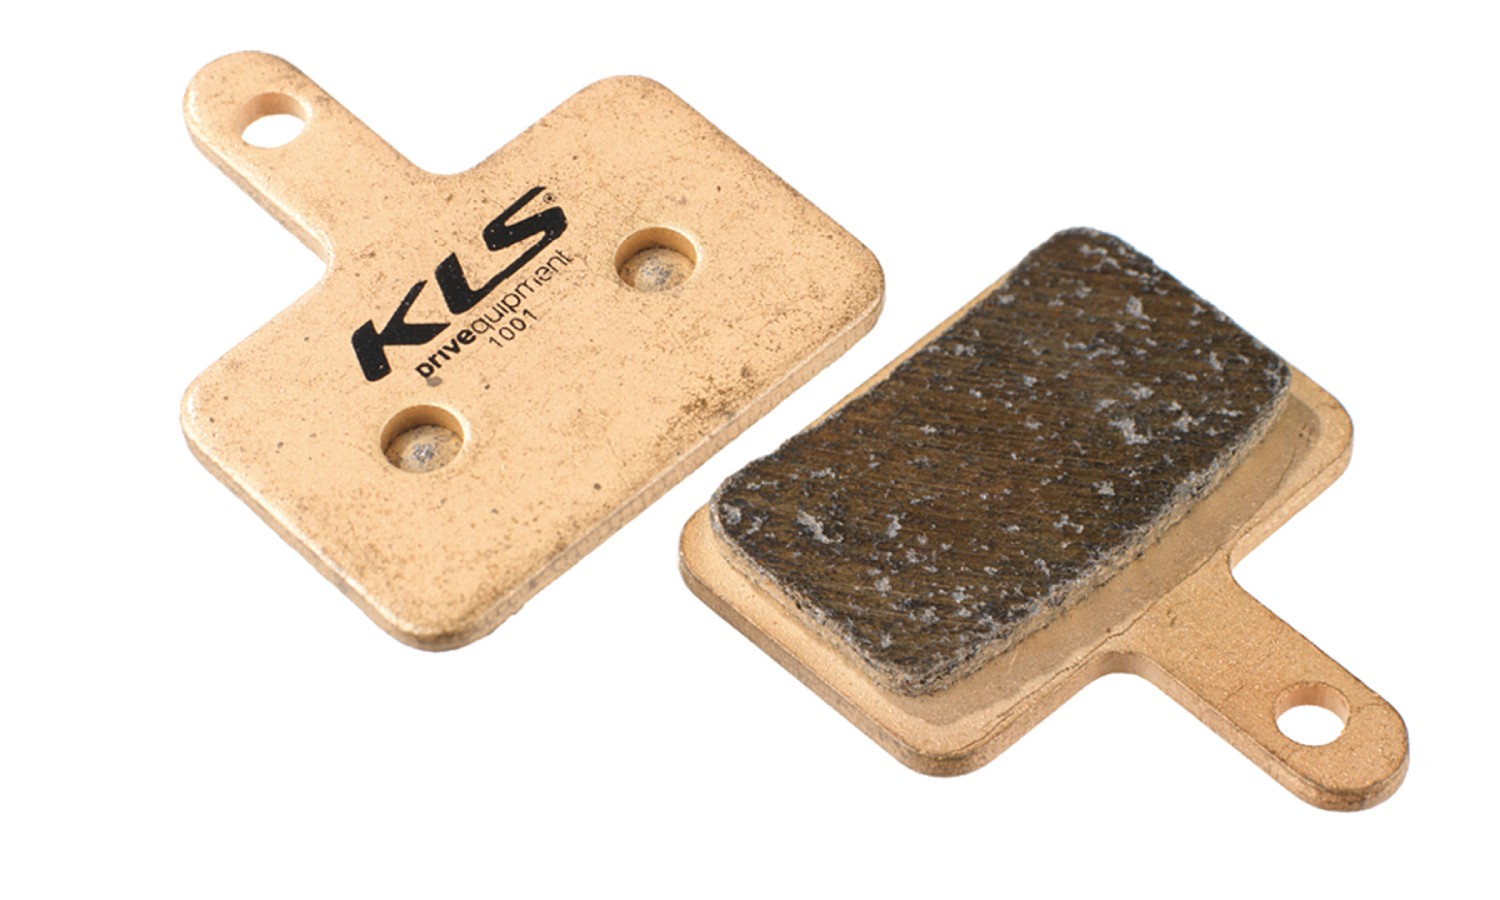 Фотография Колодки тормозные KLS D-04s для Shimano BR-M515 полуметалл пара 